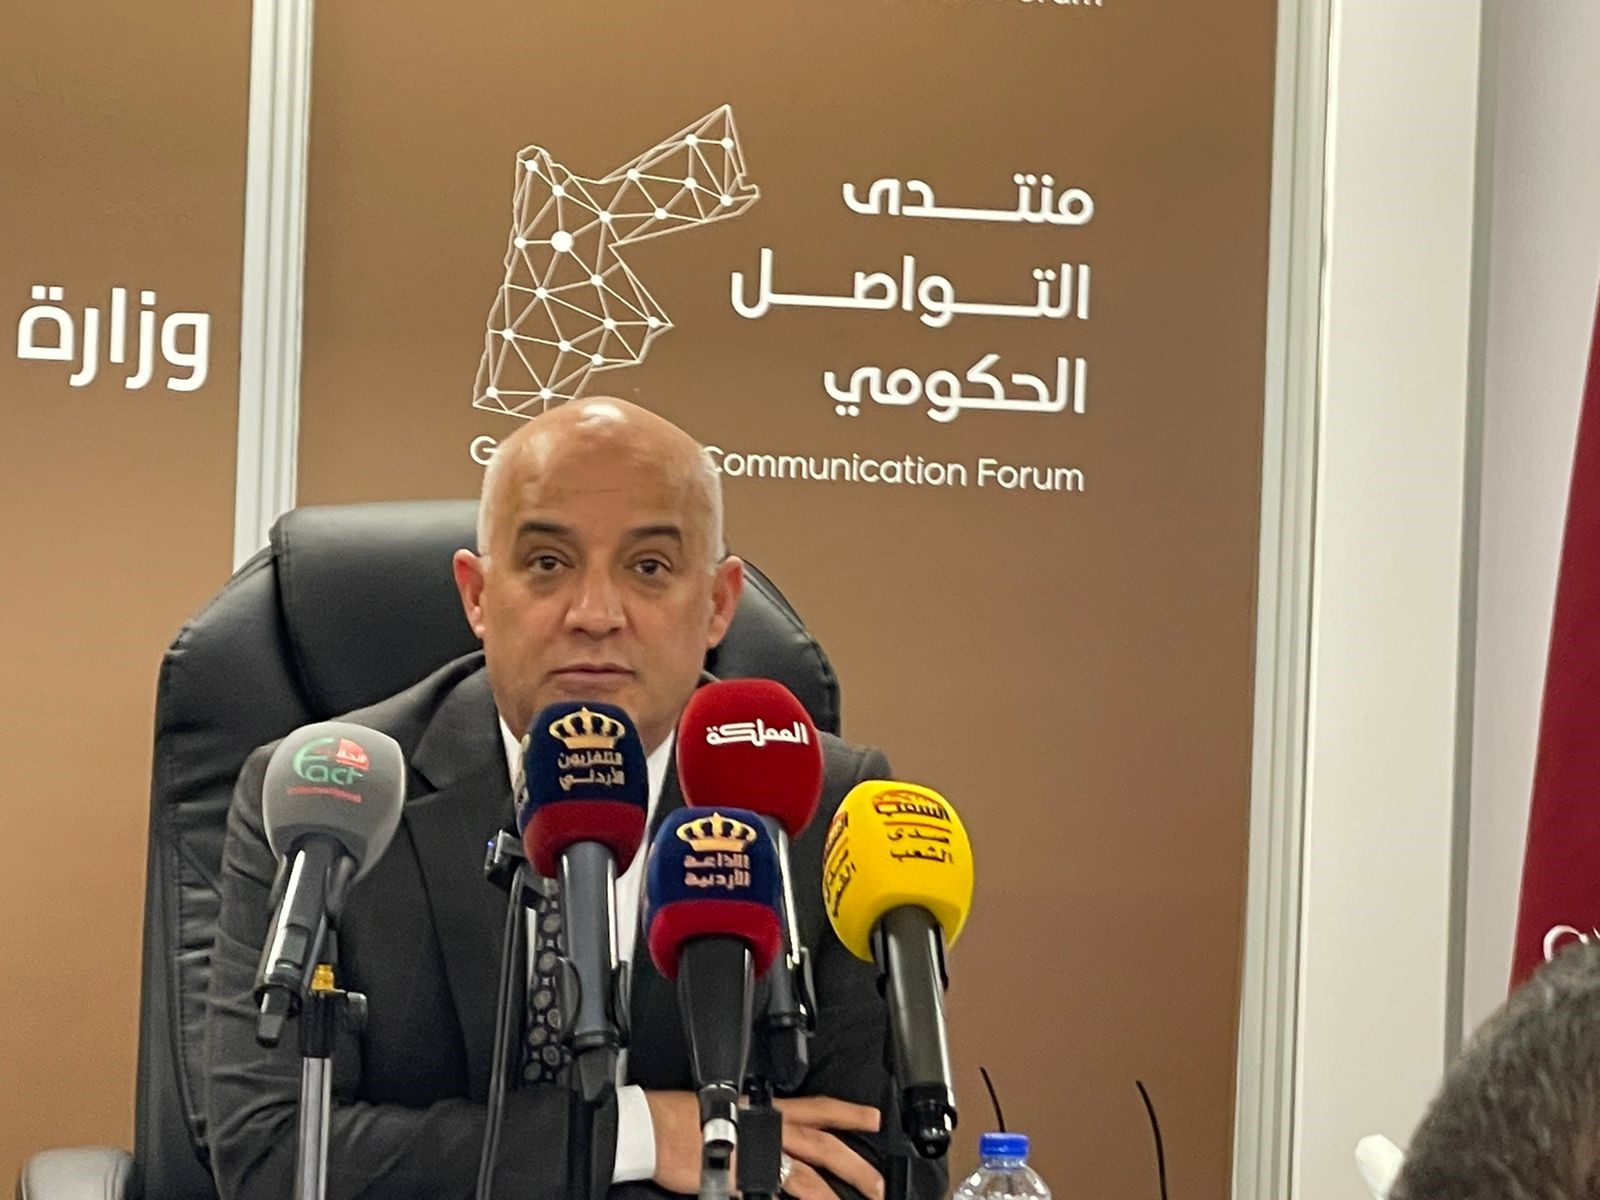 وزير الاتصال الحكومي: الأردن ينفذ 83 إنزالا جويا لمساعدات إنسانية على غزة